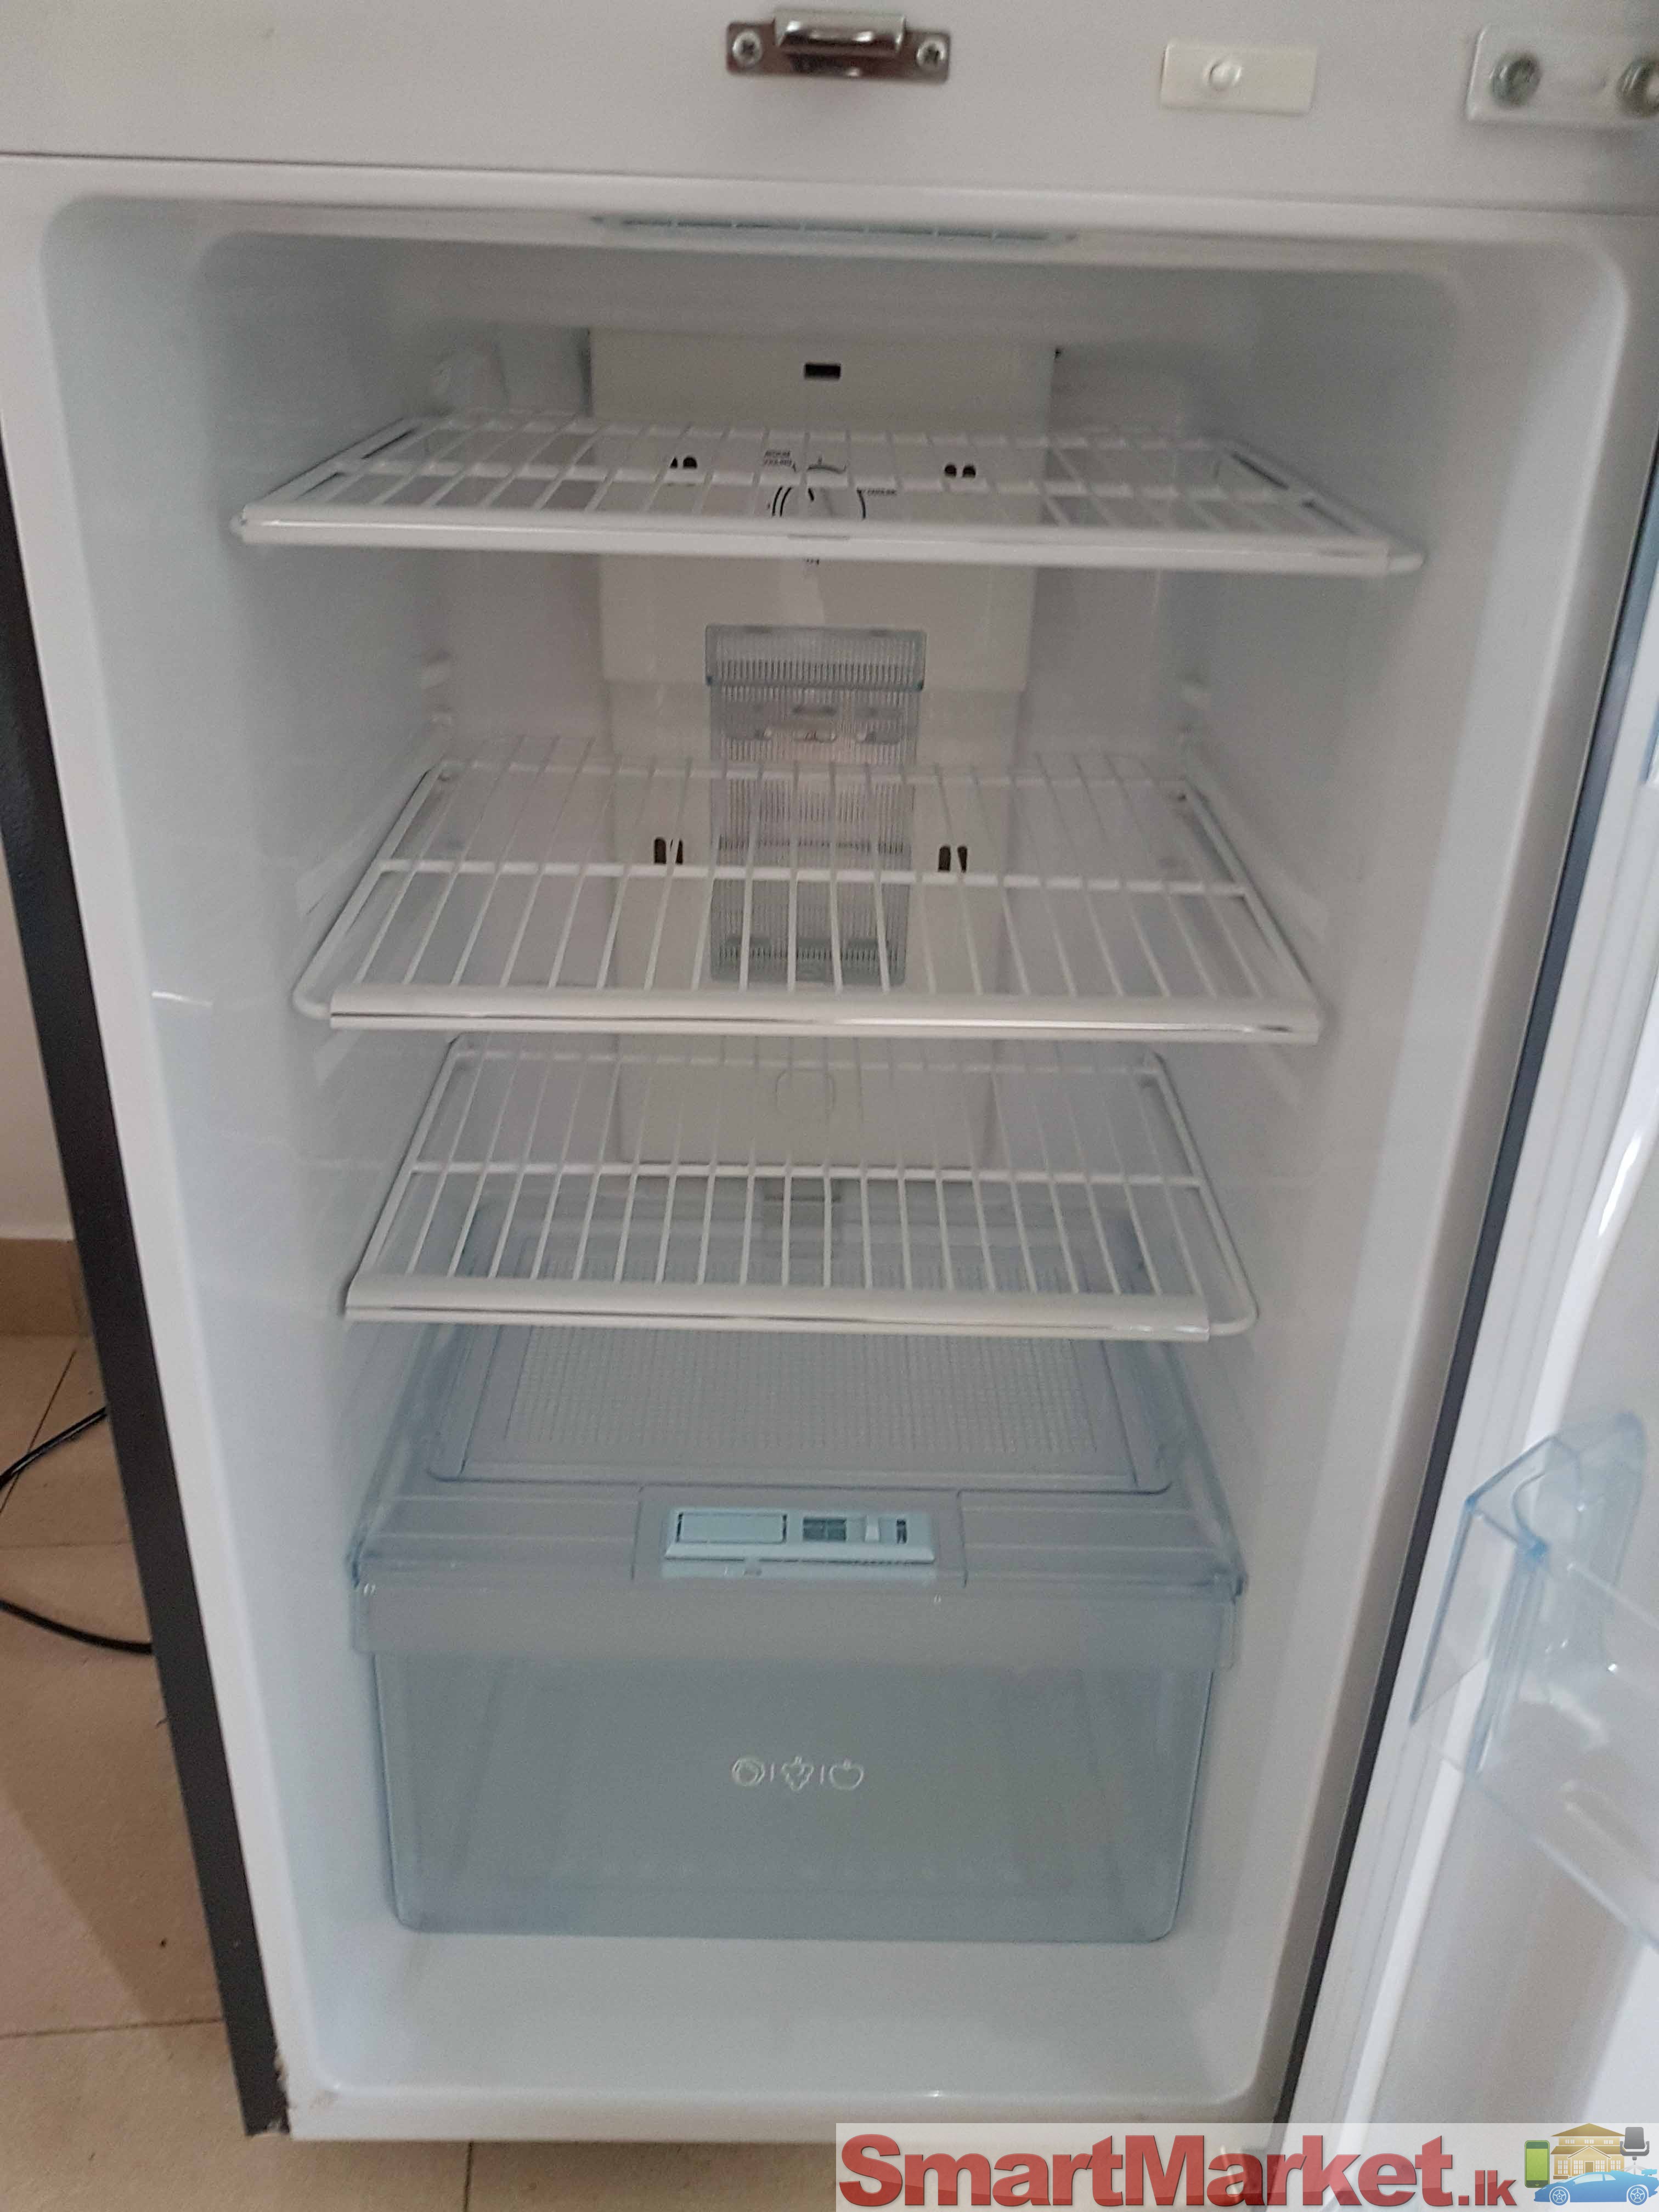 LG double door refrigerator / fridge